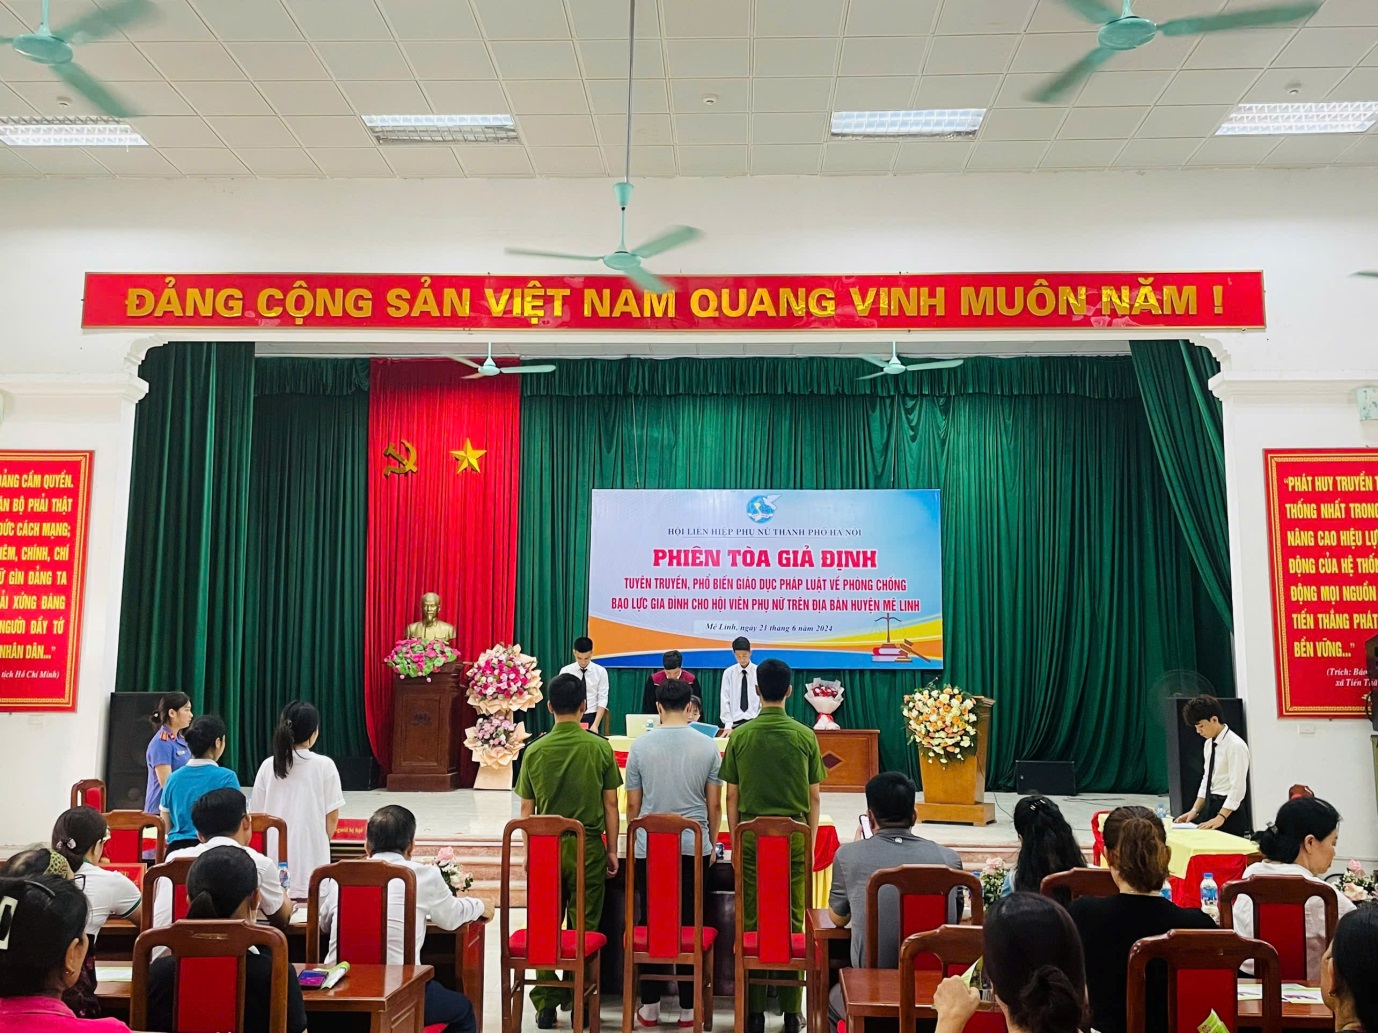 Hội LHPN Mê Linh tổ chức phiên tòa giả định phòng, chống bạo lực gia đình- Ảnh 1.